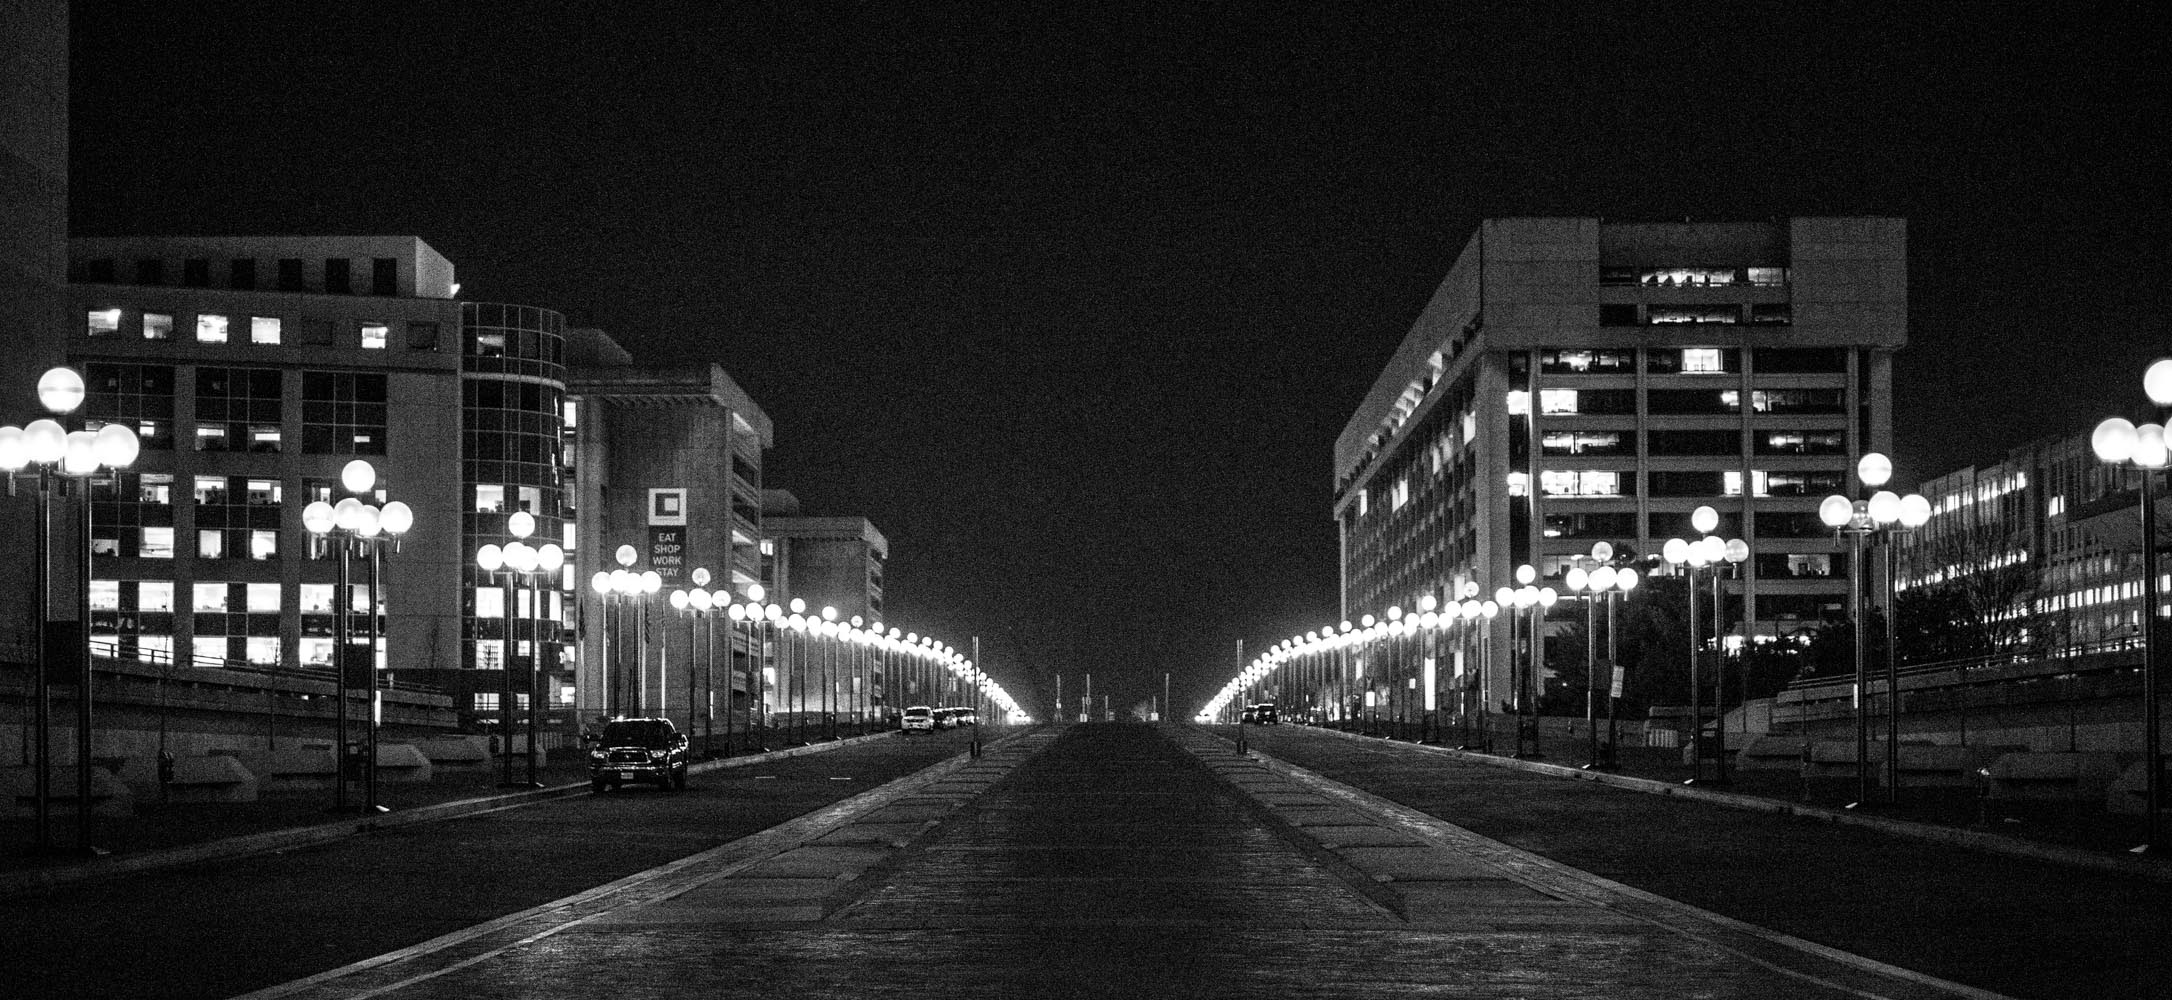 Washington DC at Night